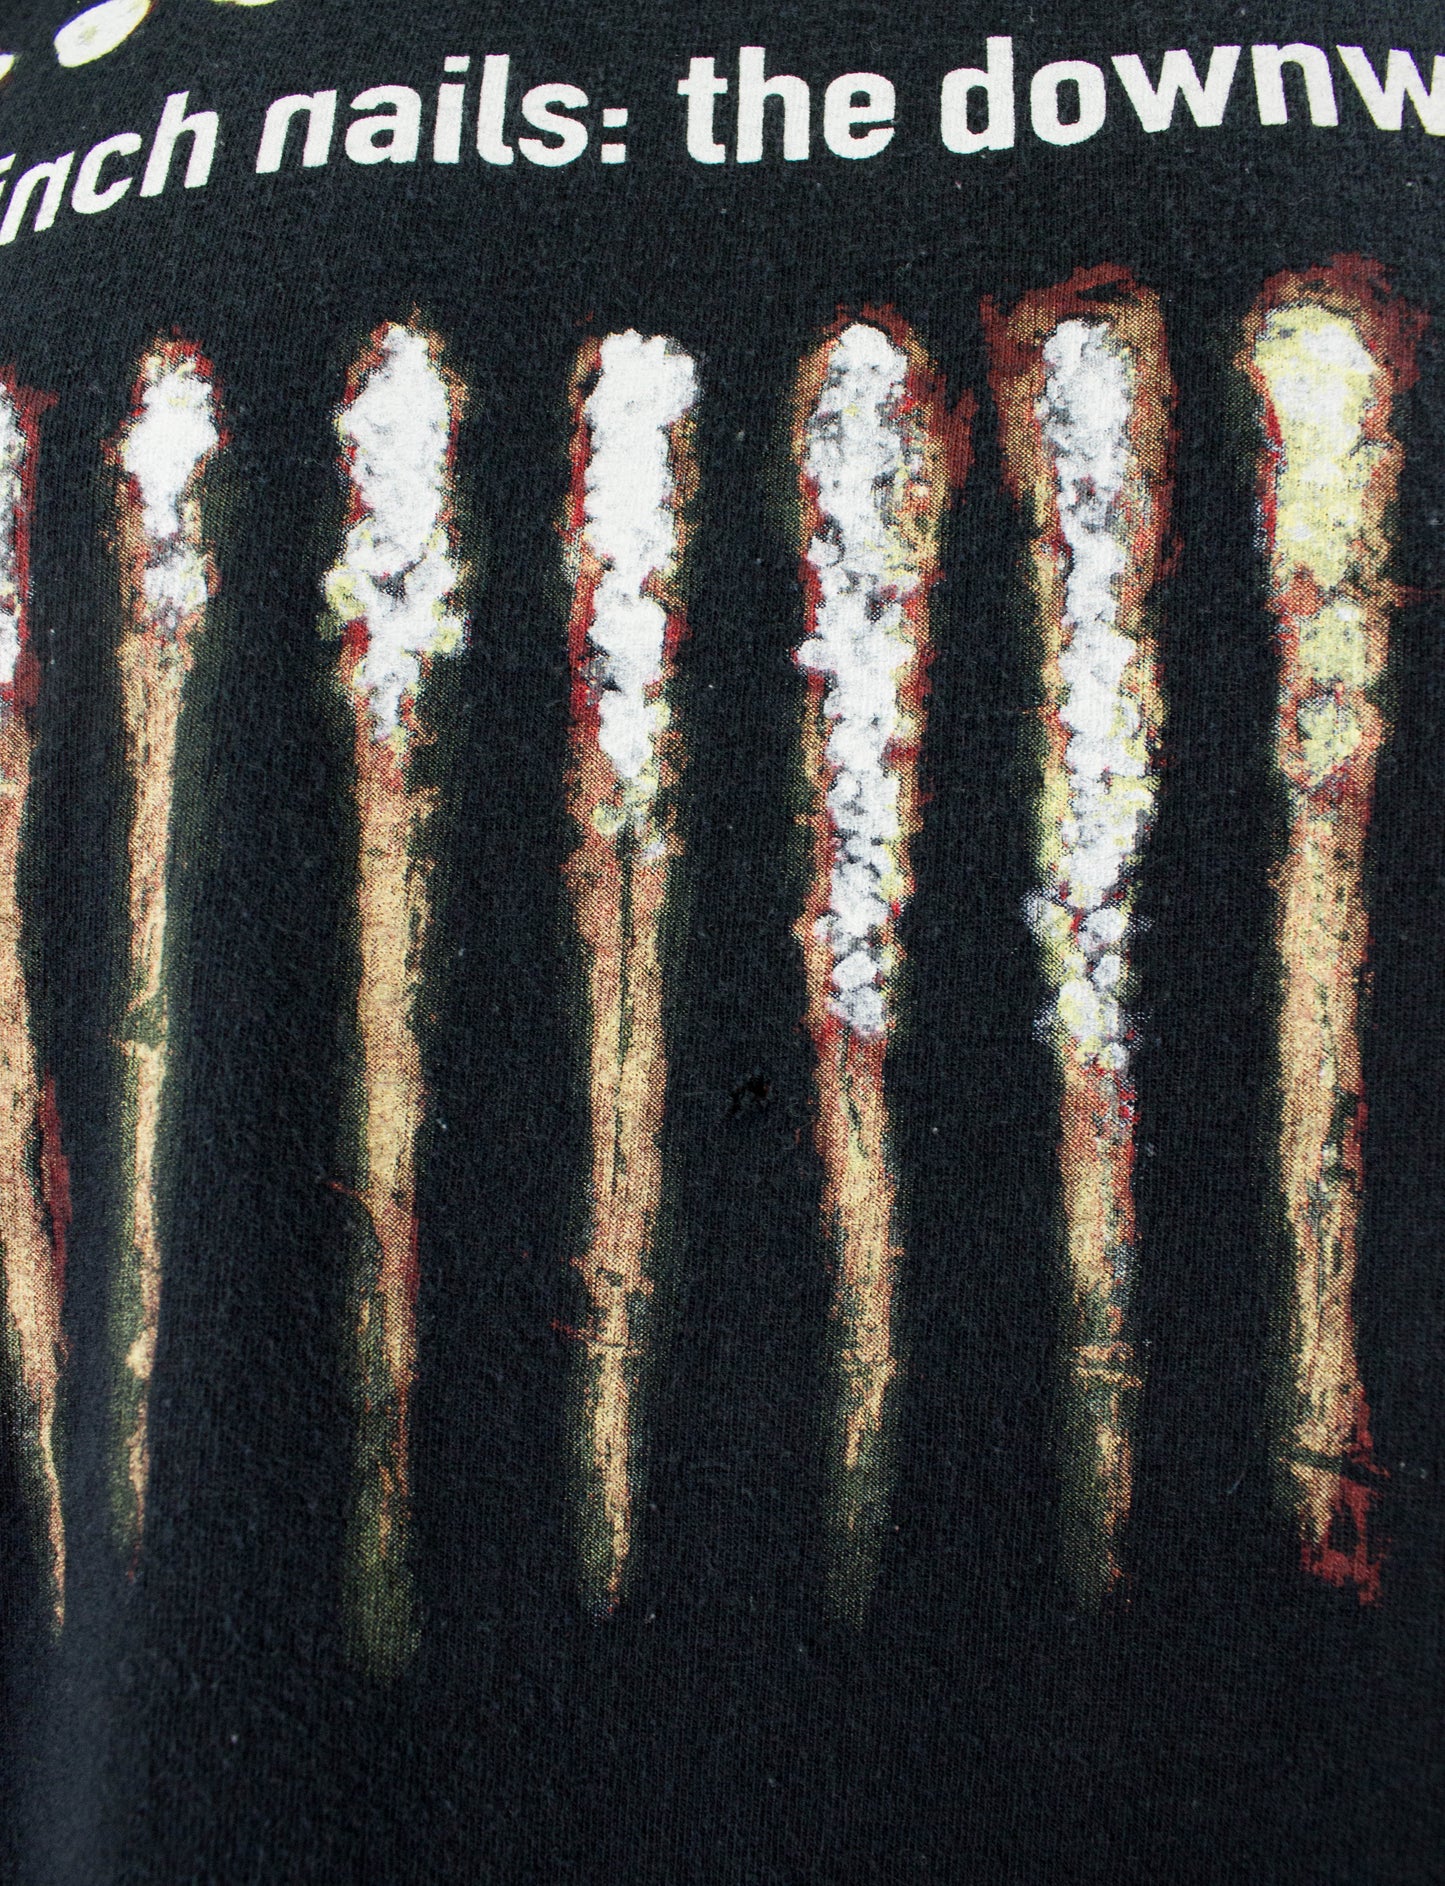 Vintage Nine Inch Nails 1994 The Downward Spiral Black Concert T Shirt Unisex XL